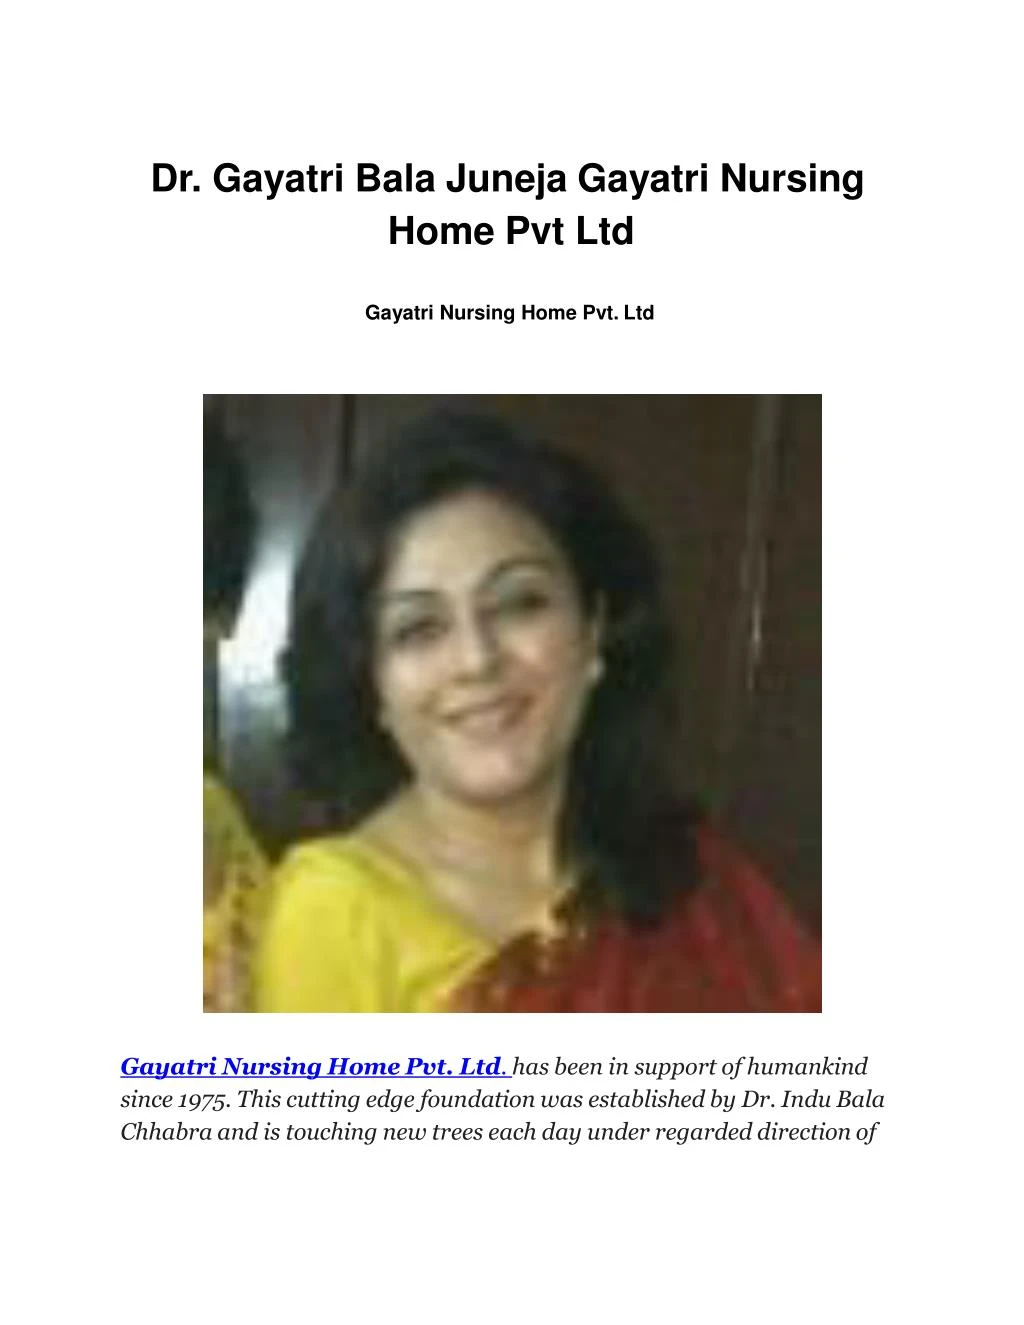 dr gayatri bala juneja gayatri nursing home